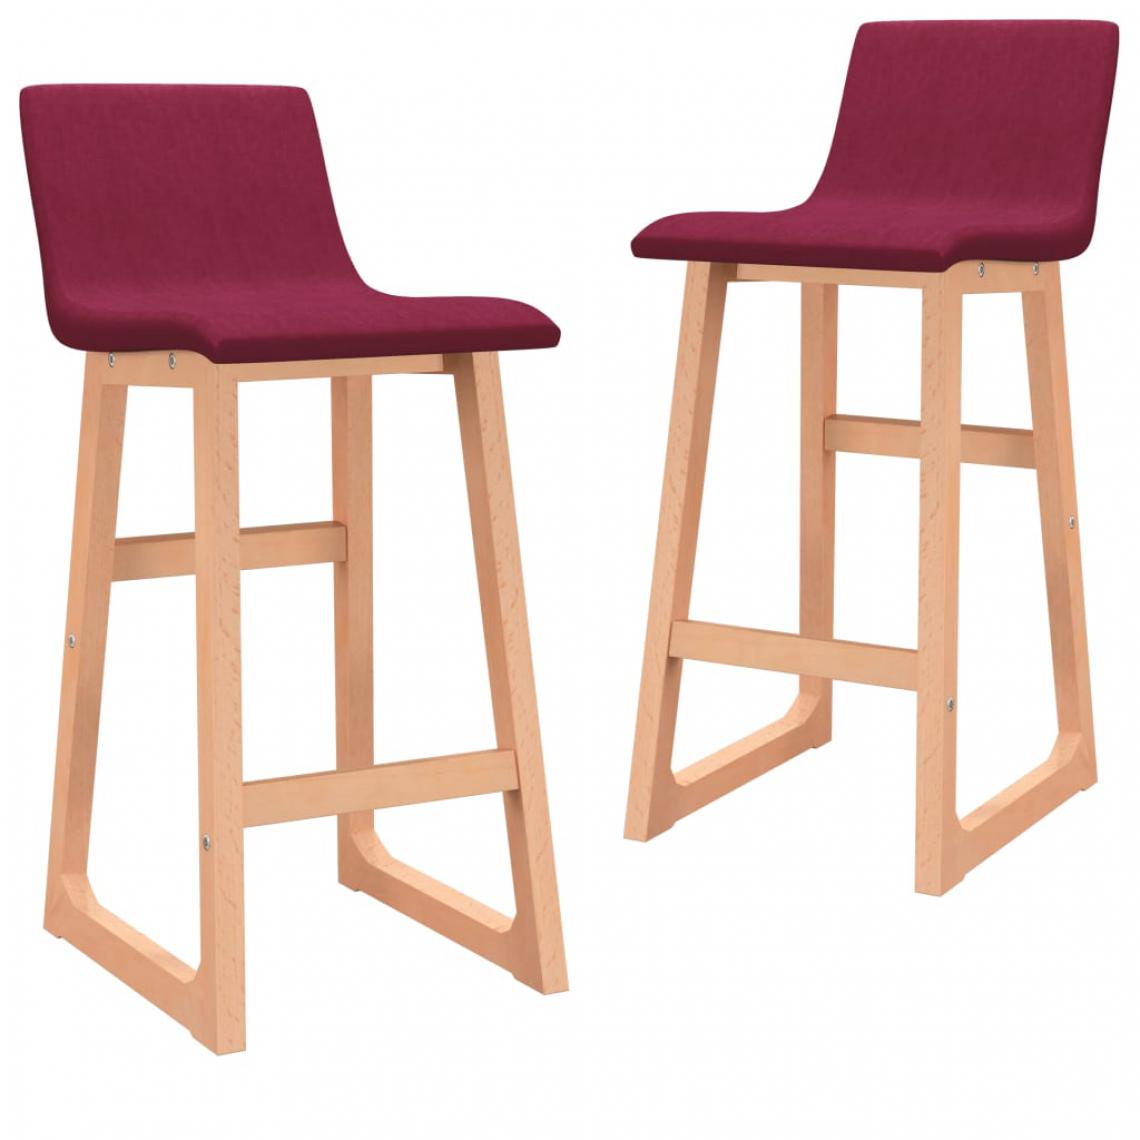 Icaverne - Moderne Fauteuils et chaises edition New Delhi Chaises de bar 2 pcs Rouge bordeaux Tissu - Tabourets